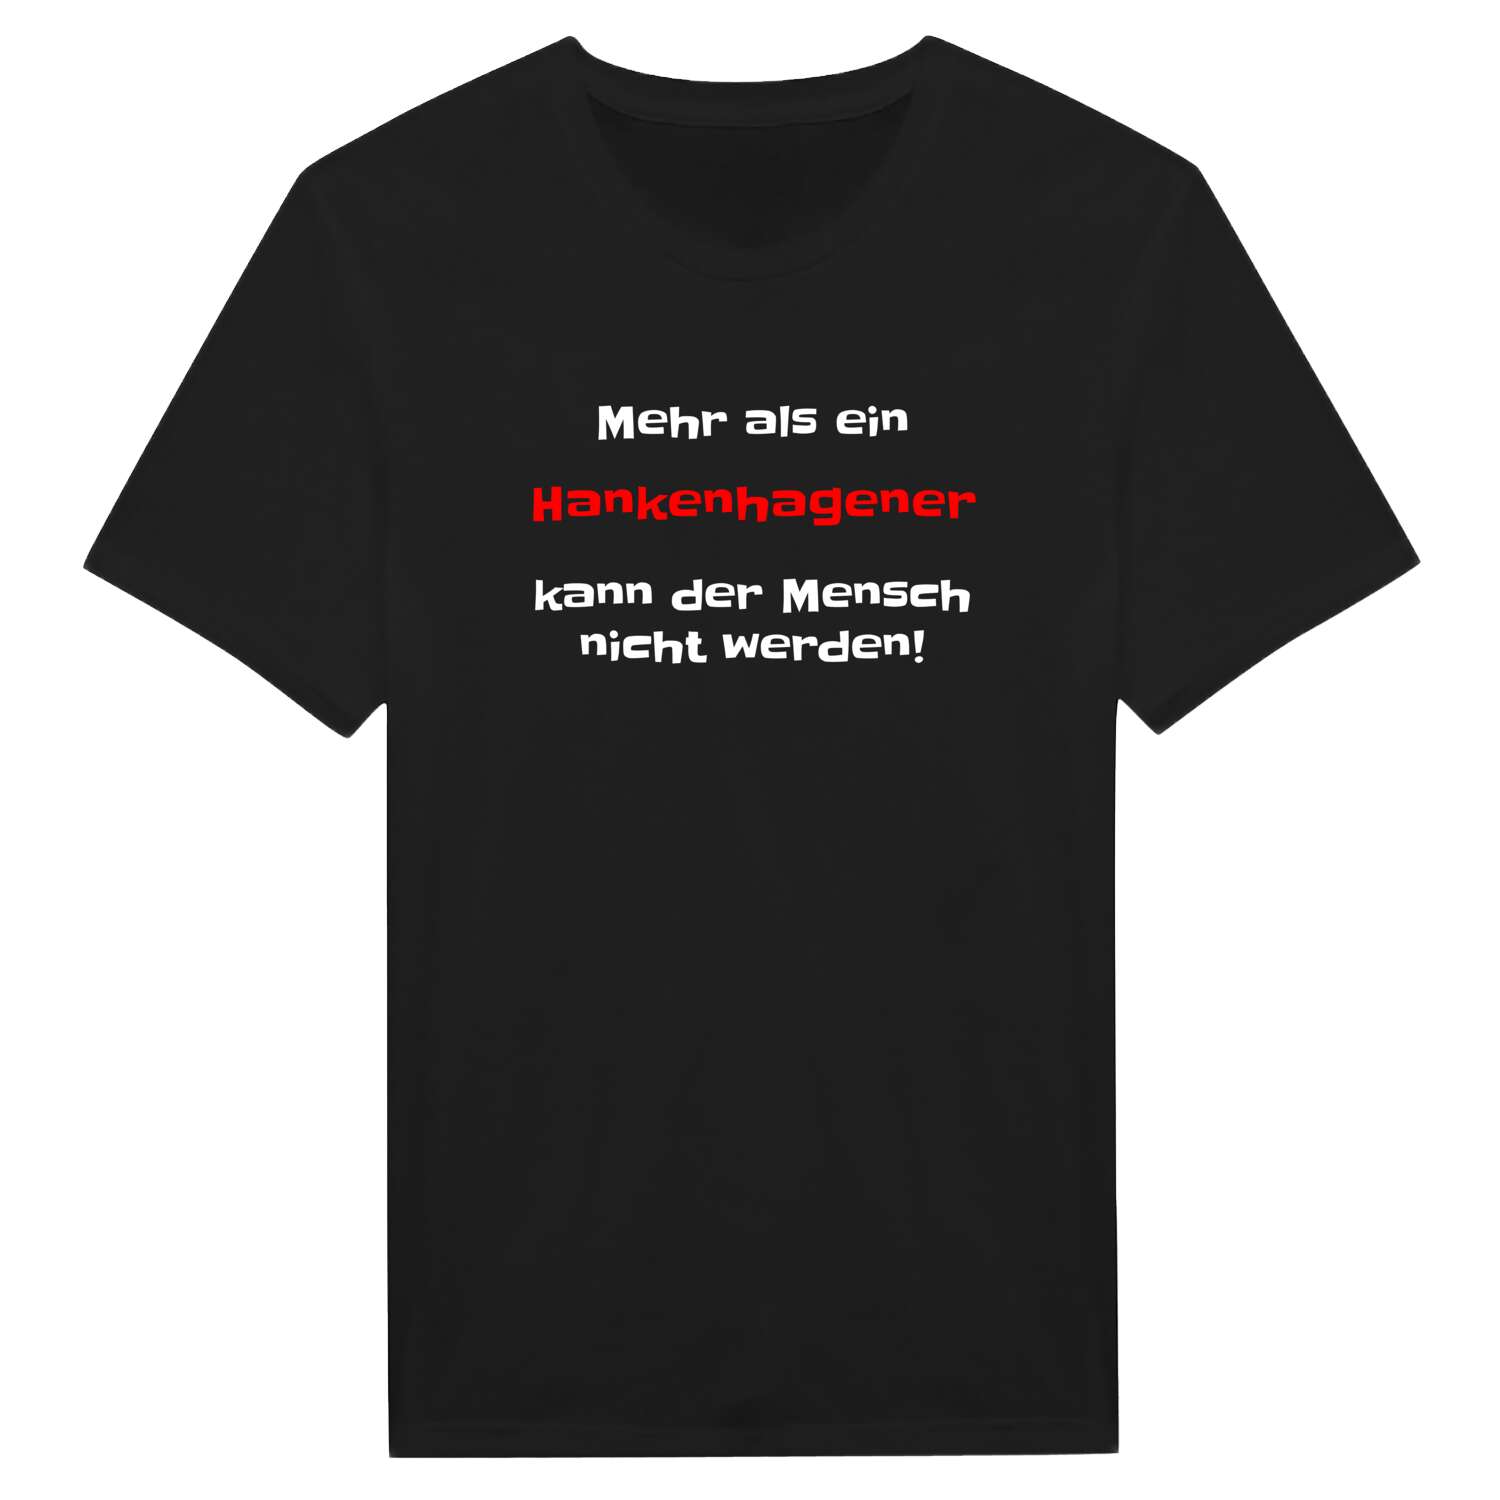 Hankenhagen T-Shirt »Mehr als ein«